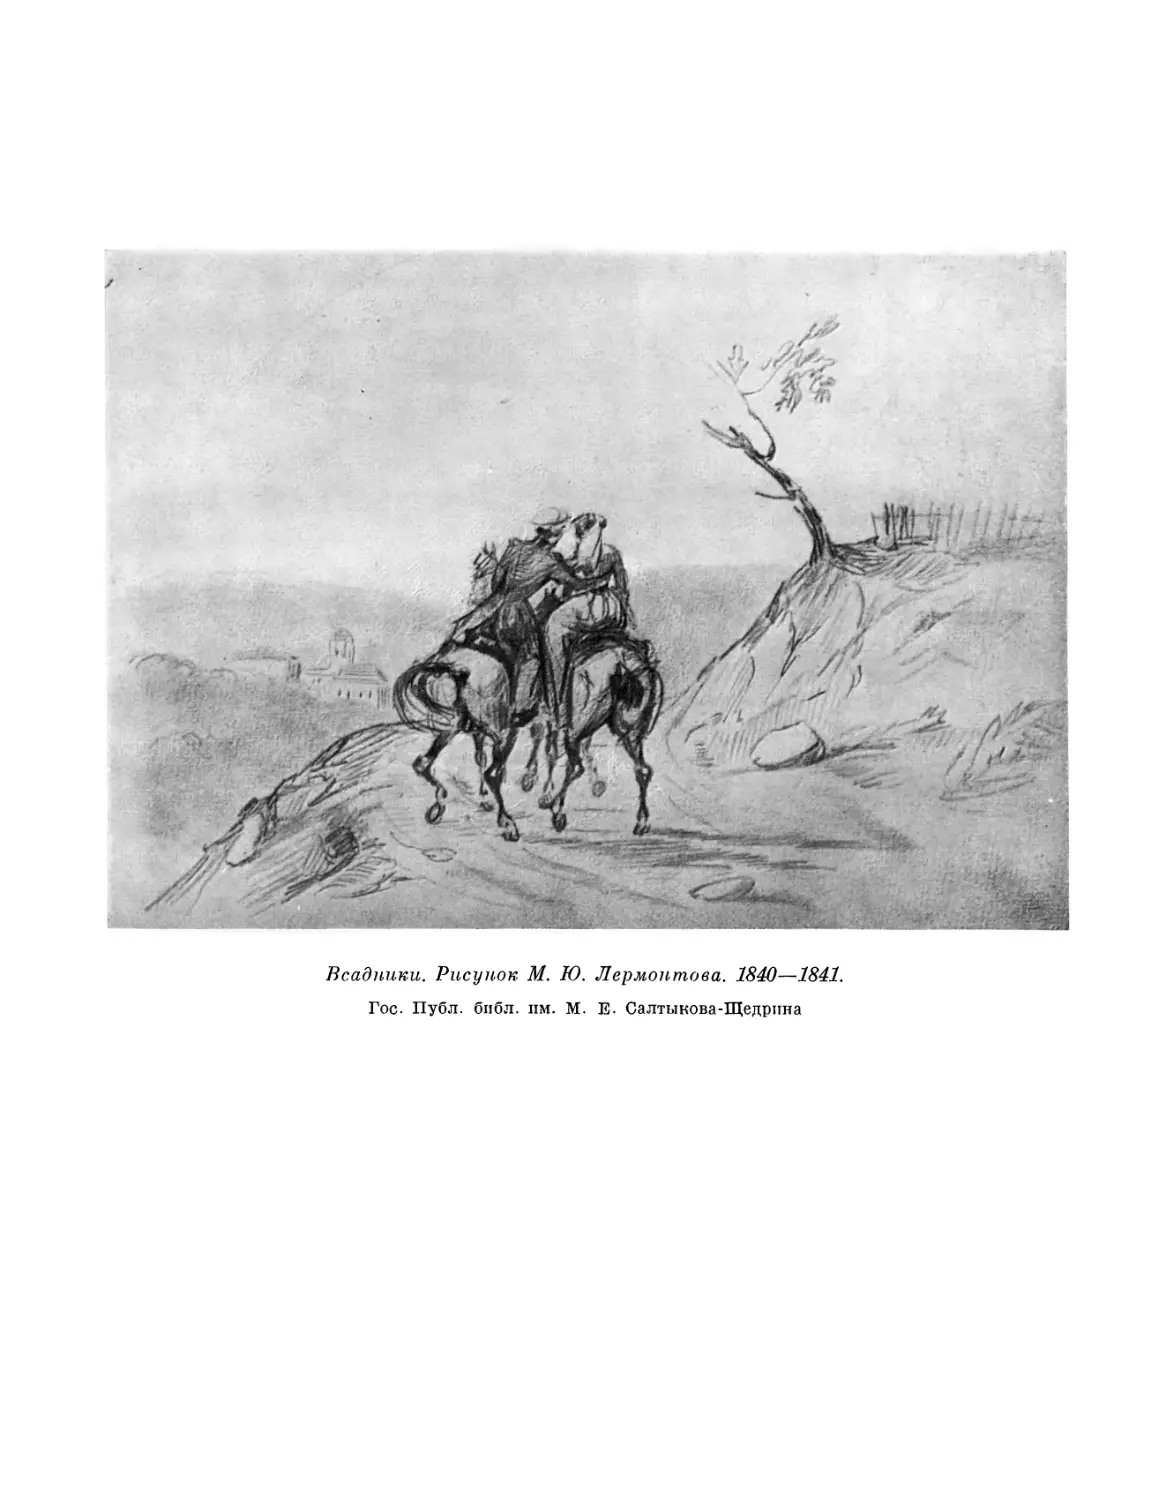 Вклейка. Всадники. Рисунок М. Ю. Лермонтова. 1840—1841